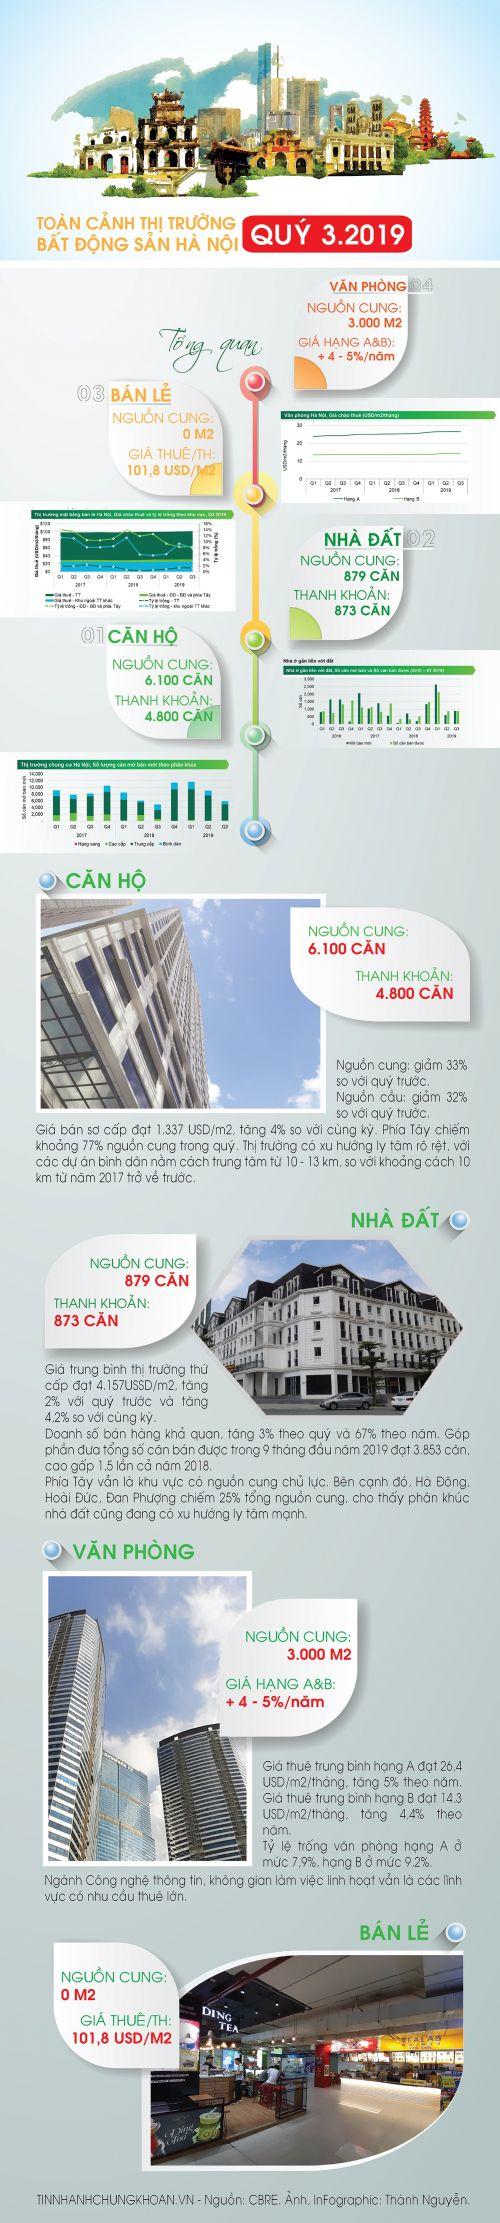 [Infographic] Toàn cảnh thị trường bất động sản Hà Nội quý III/2019